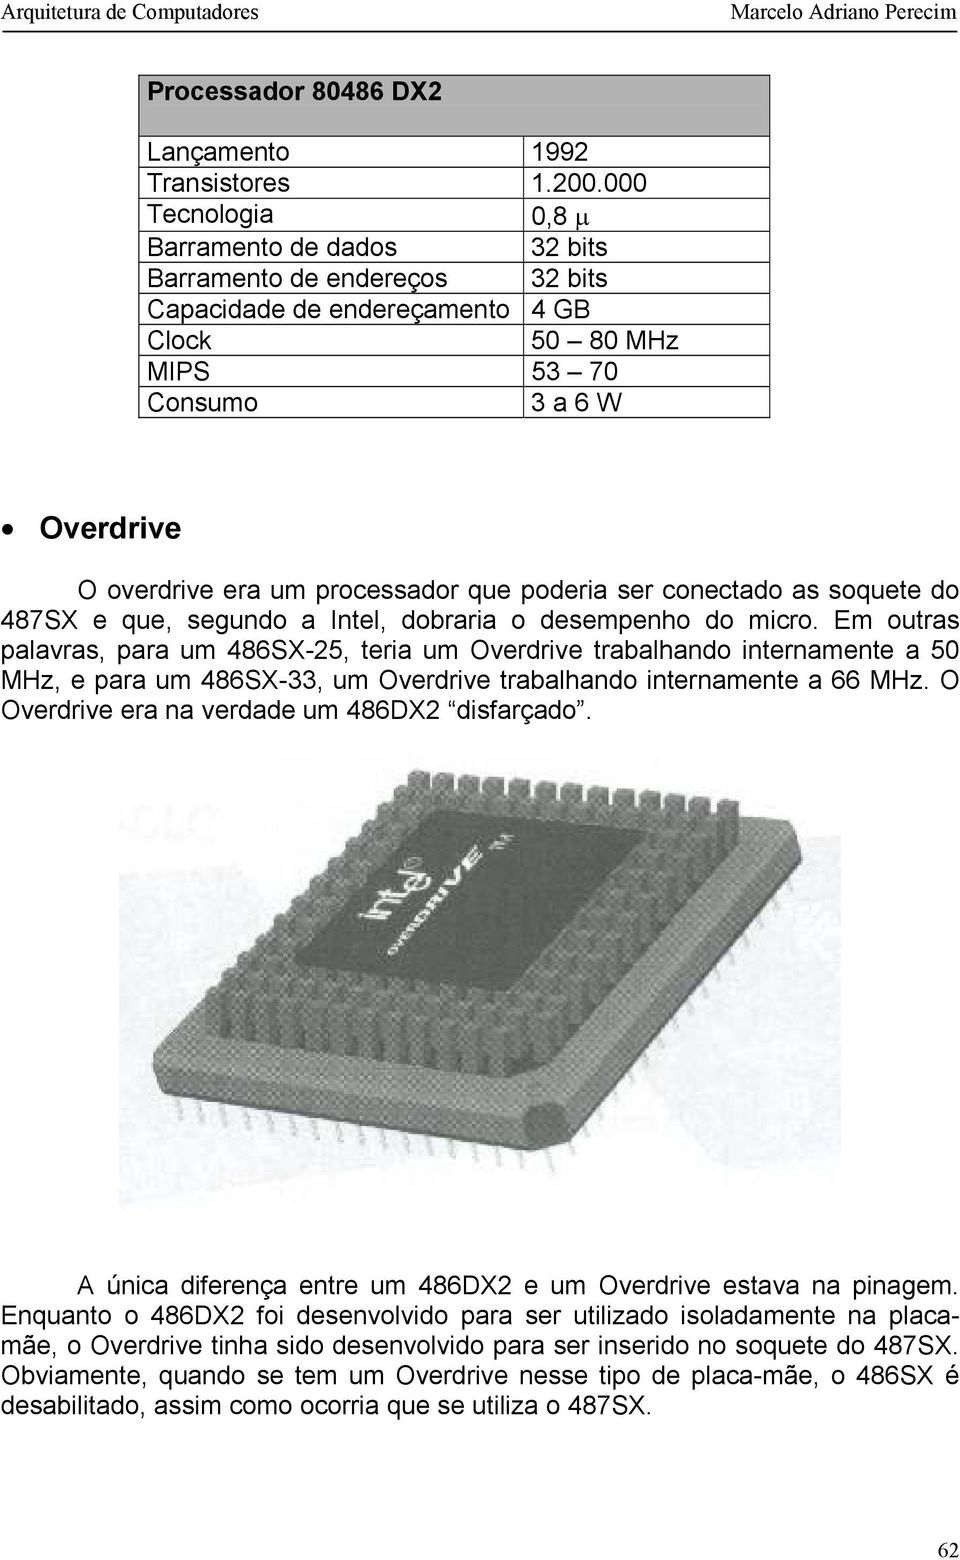 que poderia ser conectado as soquete do 487SX e que, segundo a Intel, dobraria o desempenho do micro.